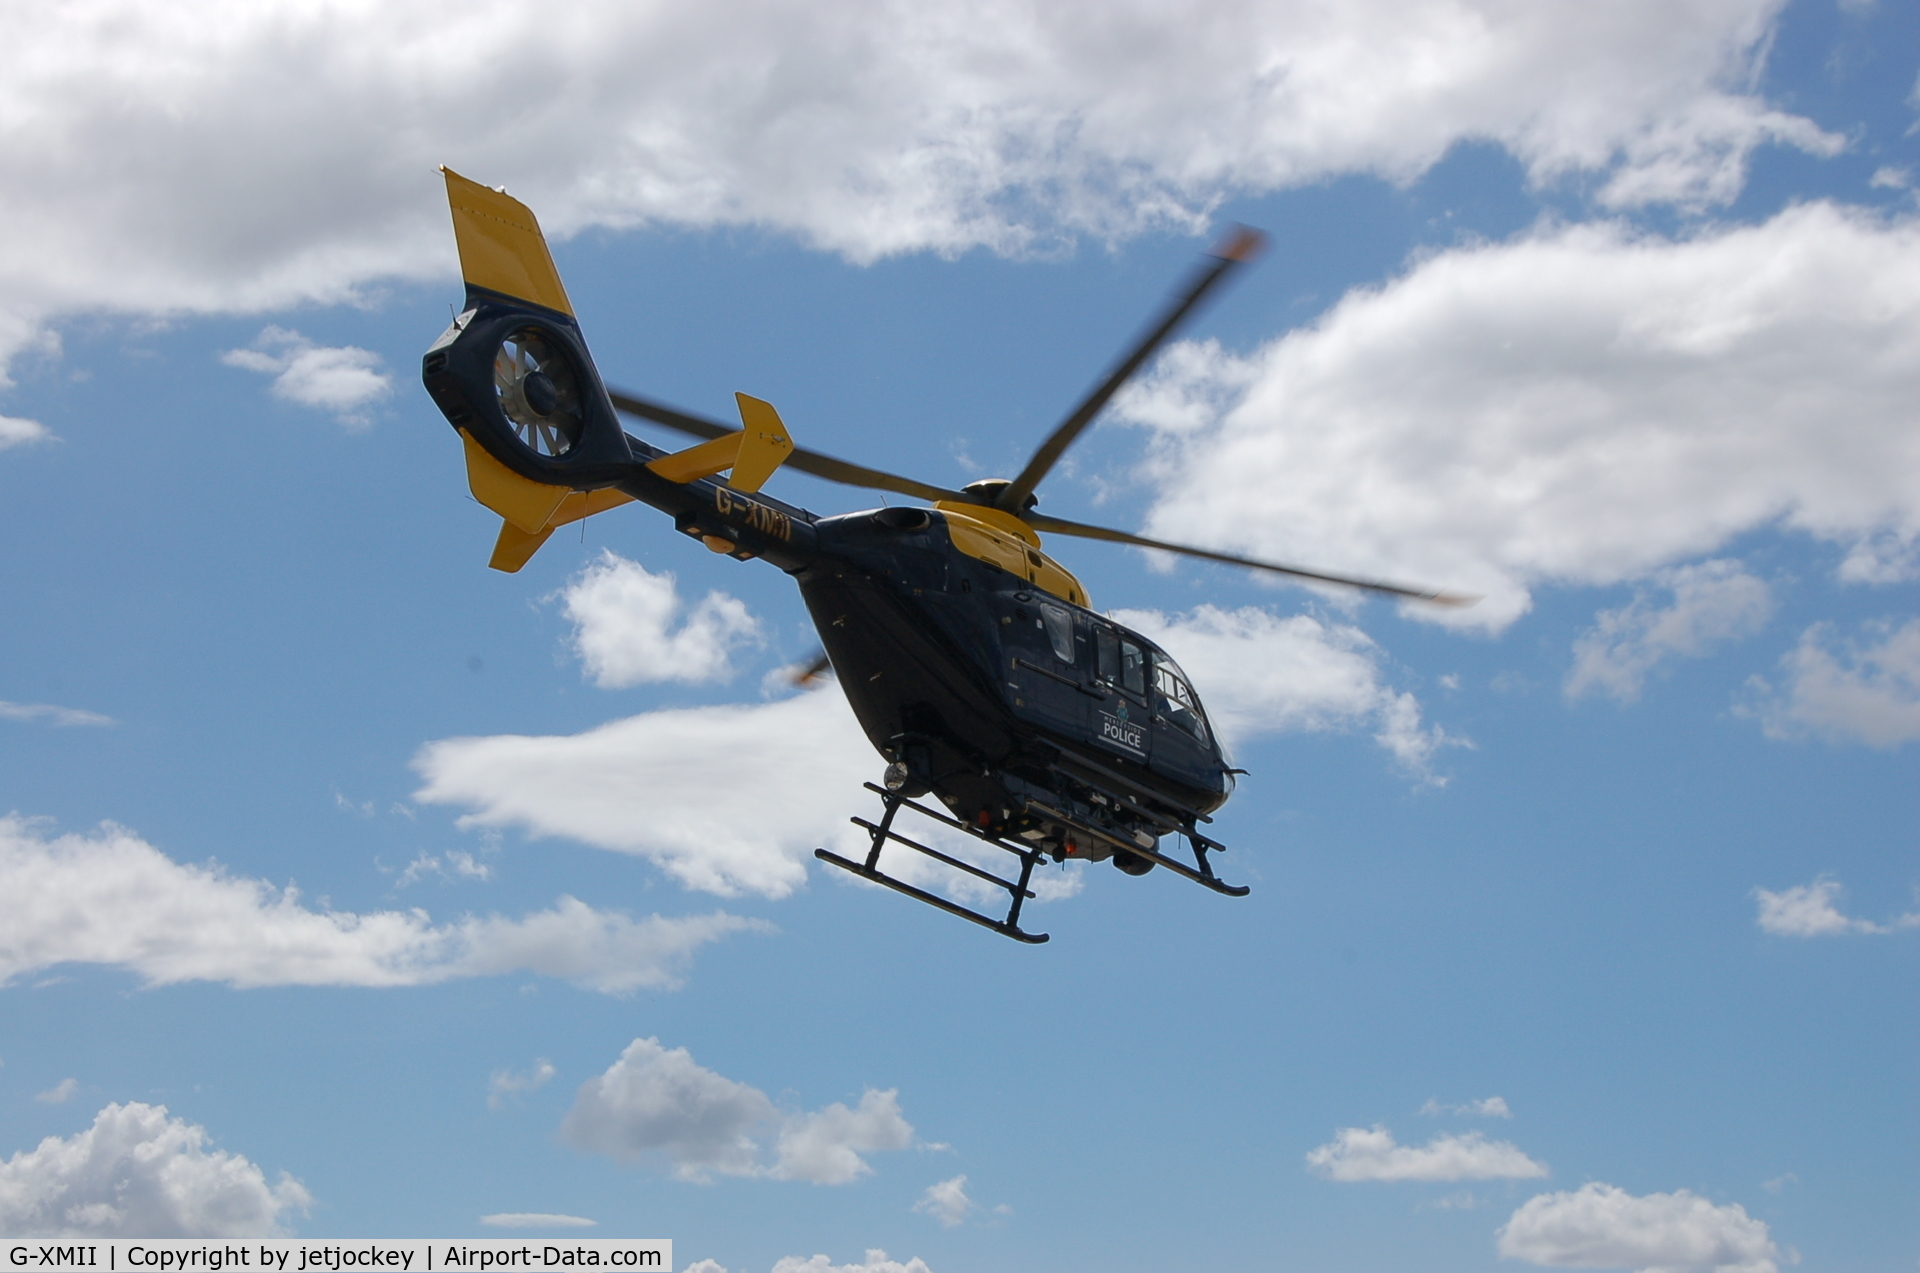 G-XMII, 2002 Eurocopter EC-135T-2+ C/N 0215, Merseyside Police Helicopter leaving old Speke Airport